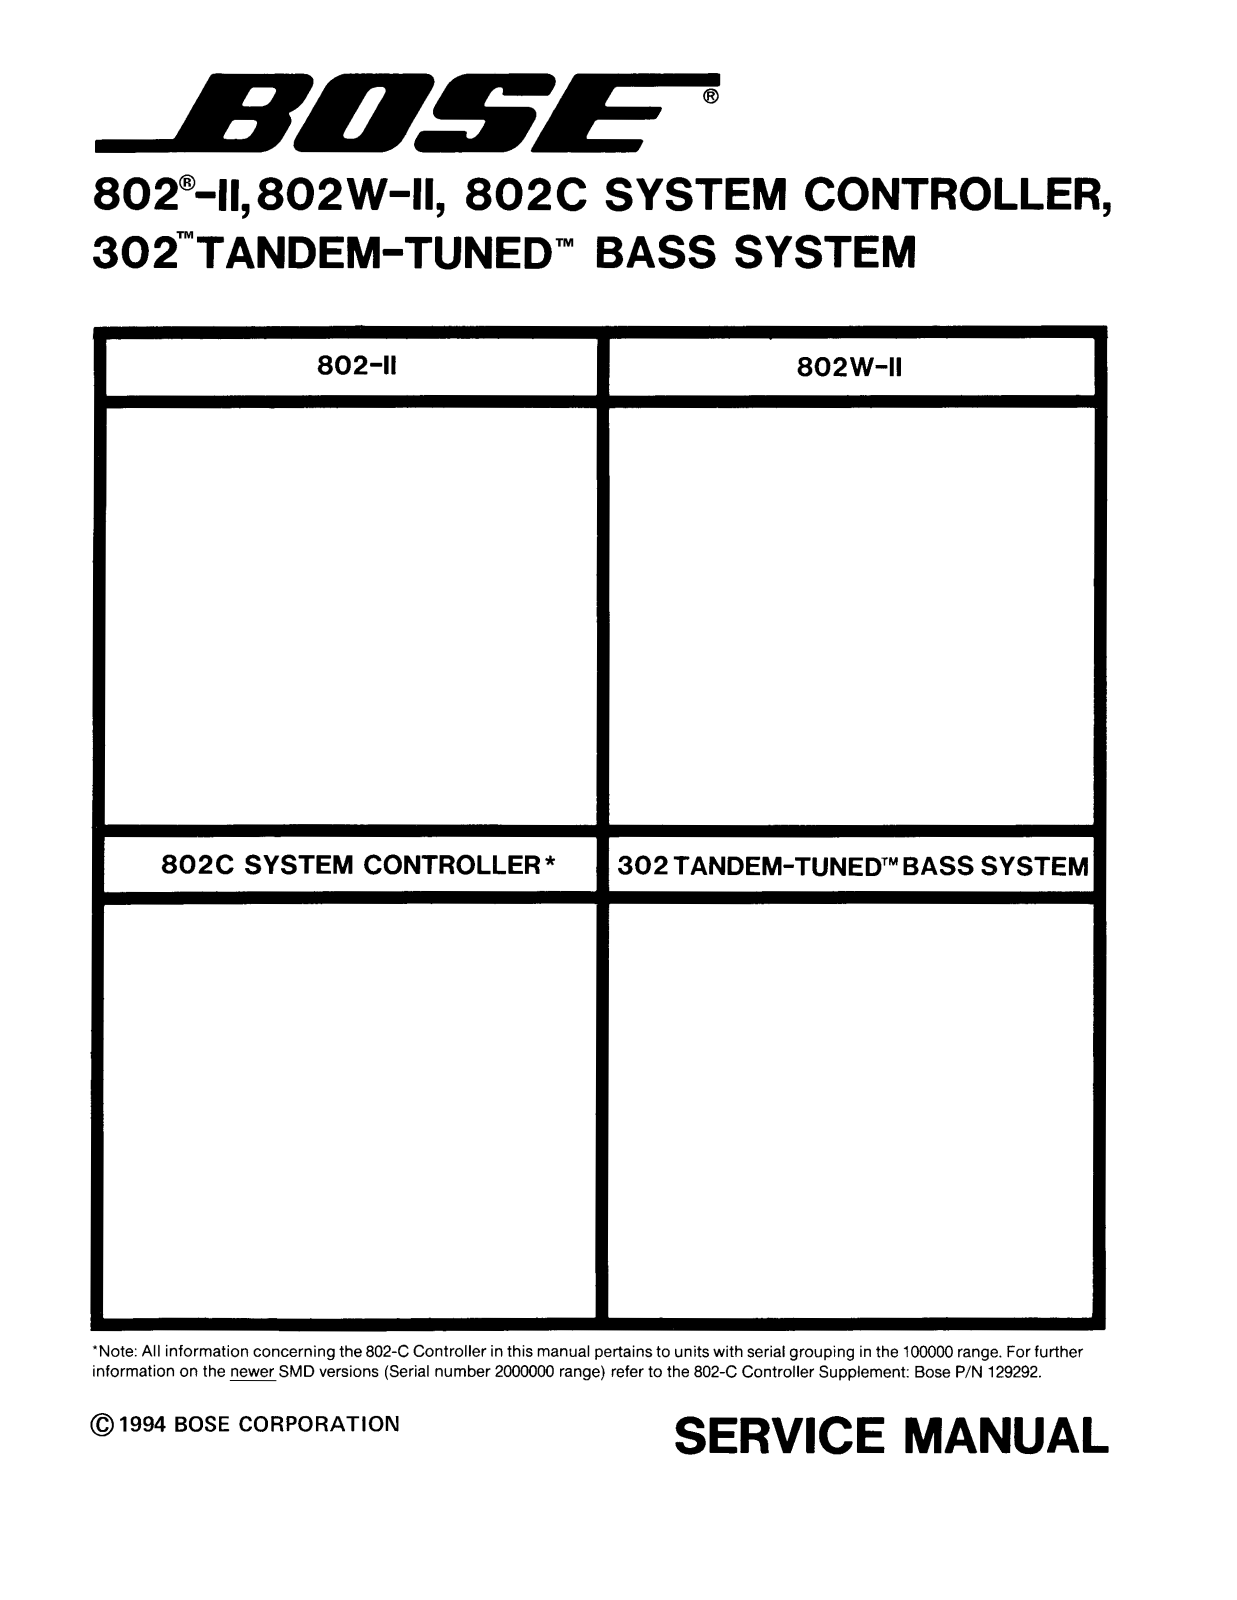 Bose 802-II, 802-C, 302, 802-W-II Service Manual